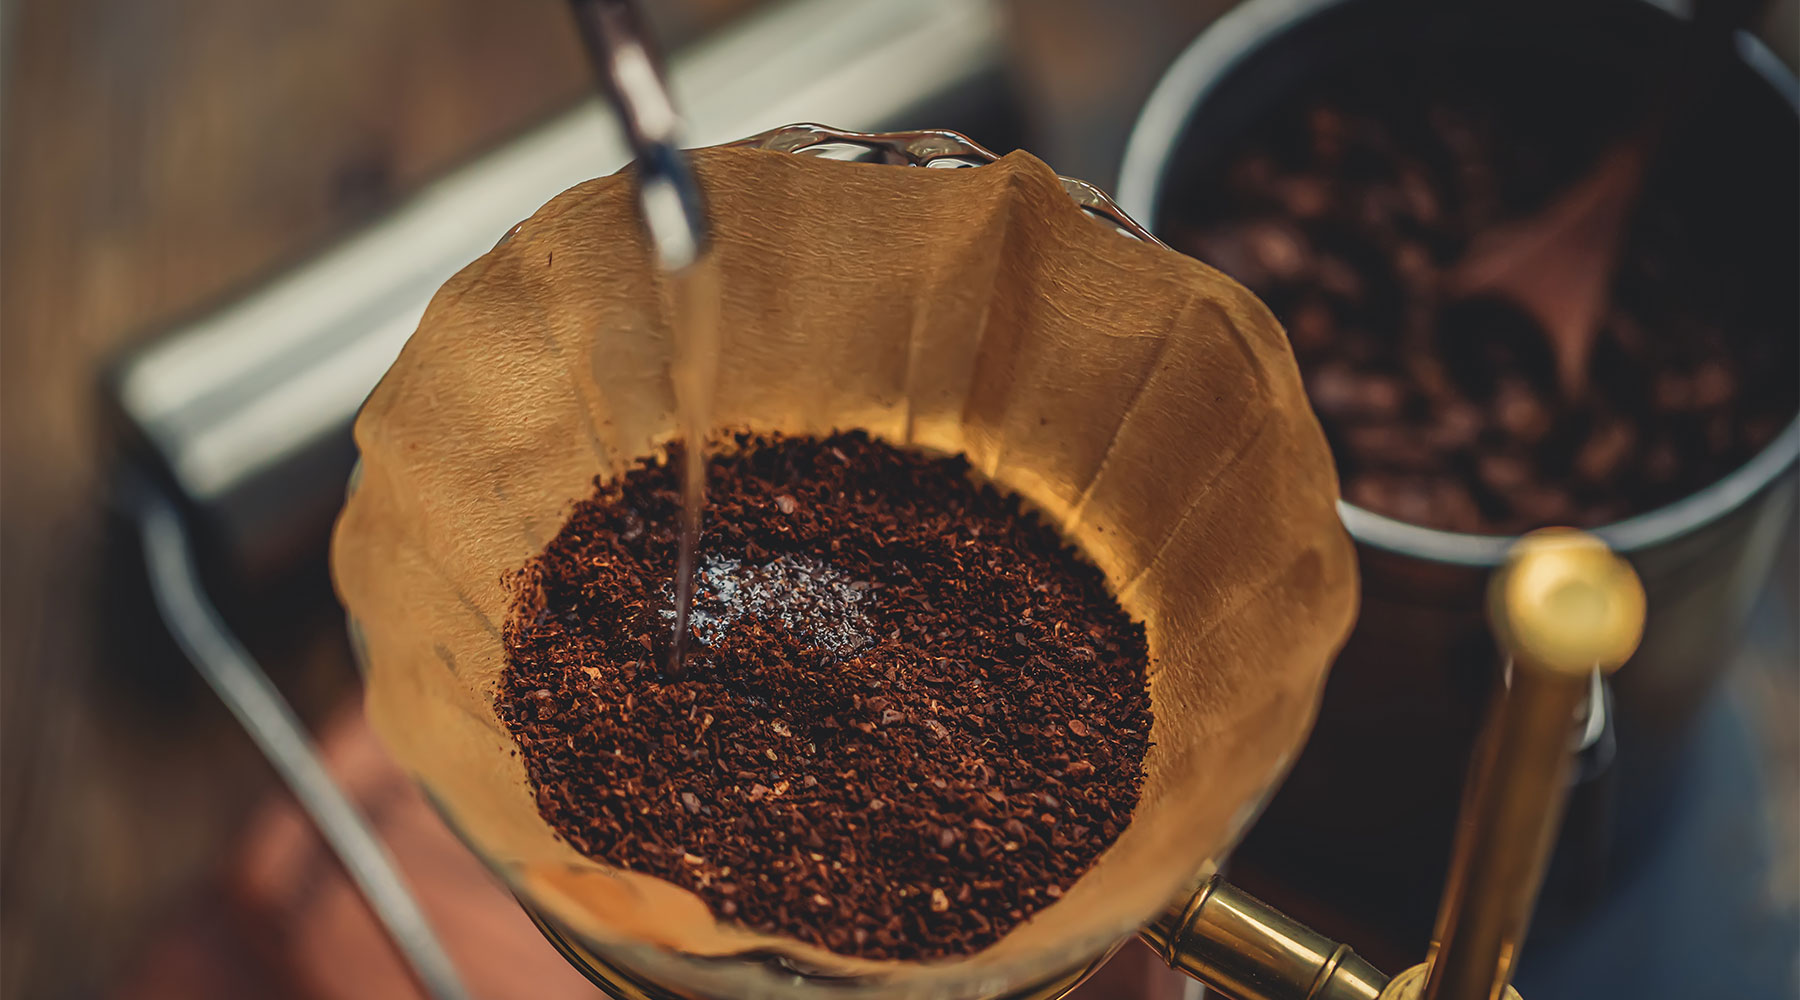 Filtre kahve yapımı ve filtre kahve demleme yöntemlerine dair detaylı bilgilendirme ve demleme rehberi bu makalede yer almaktadır.